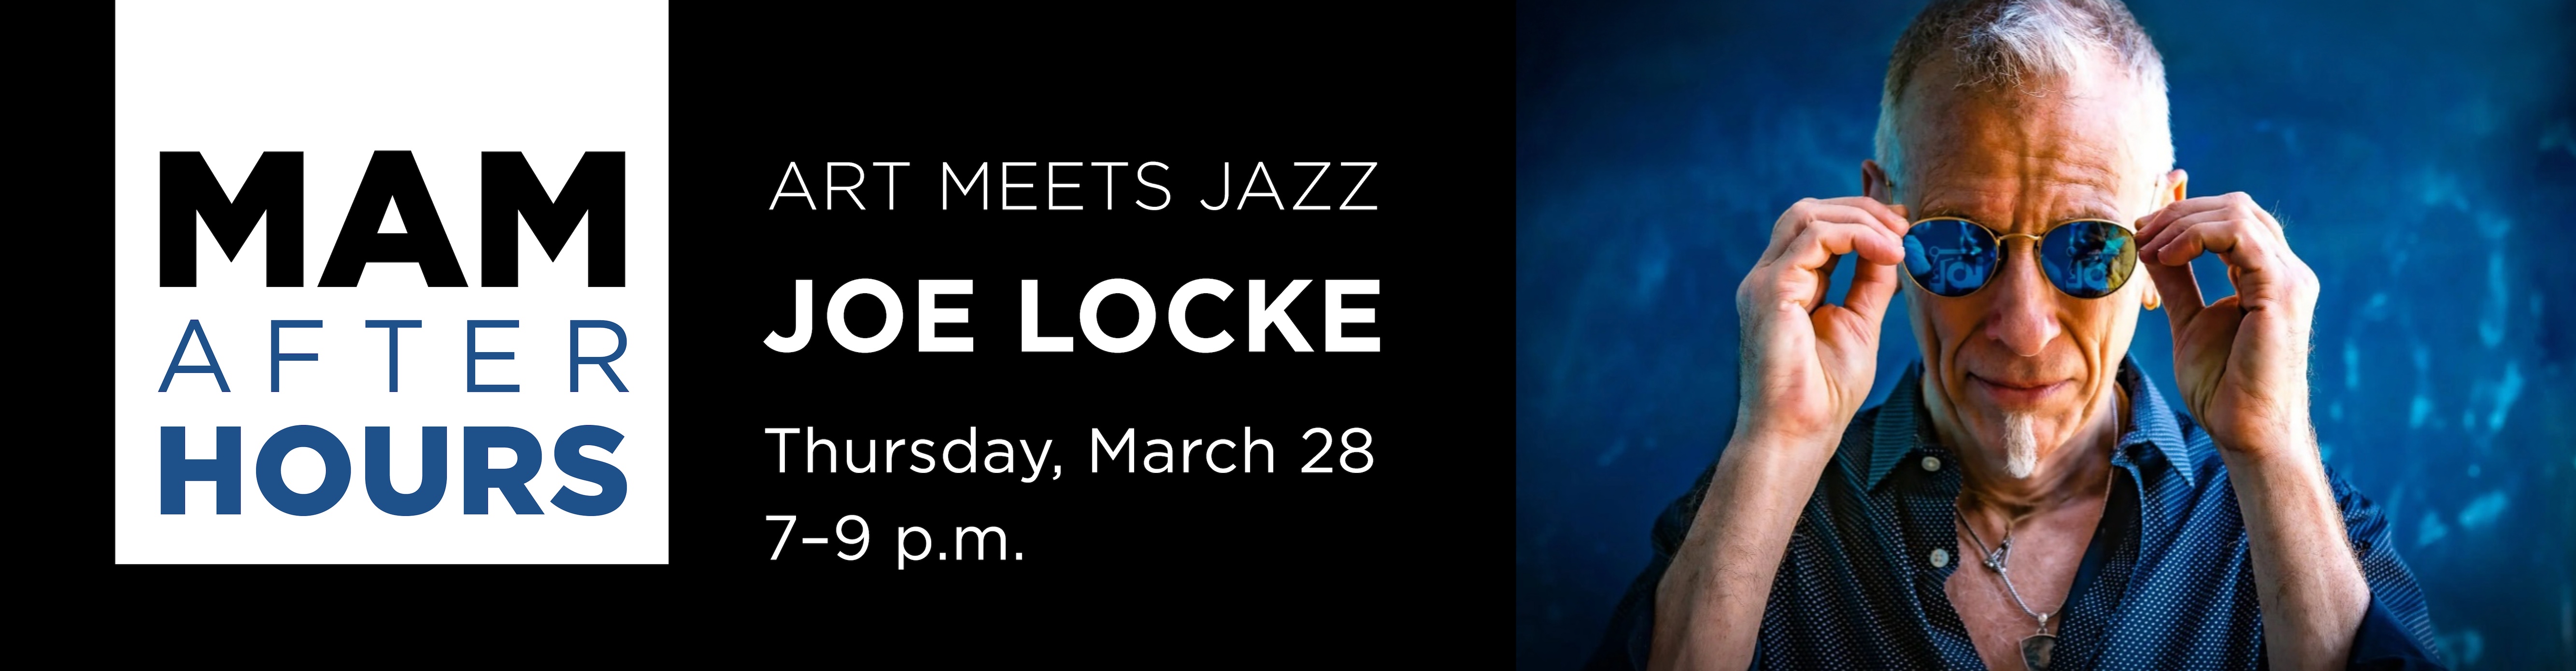 "MAM After Hours: Art Meets Jazz featuring Joe Locke, Thursday, March 28, 7–9 p.m."